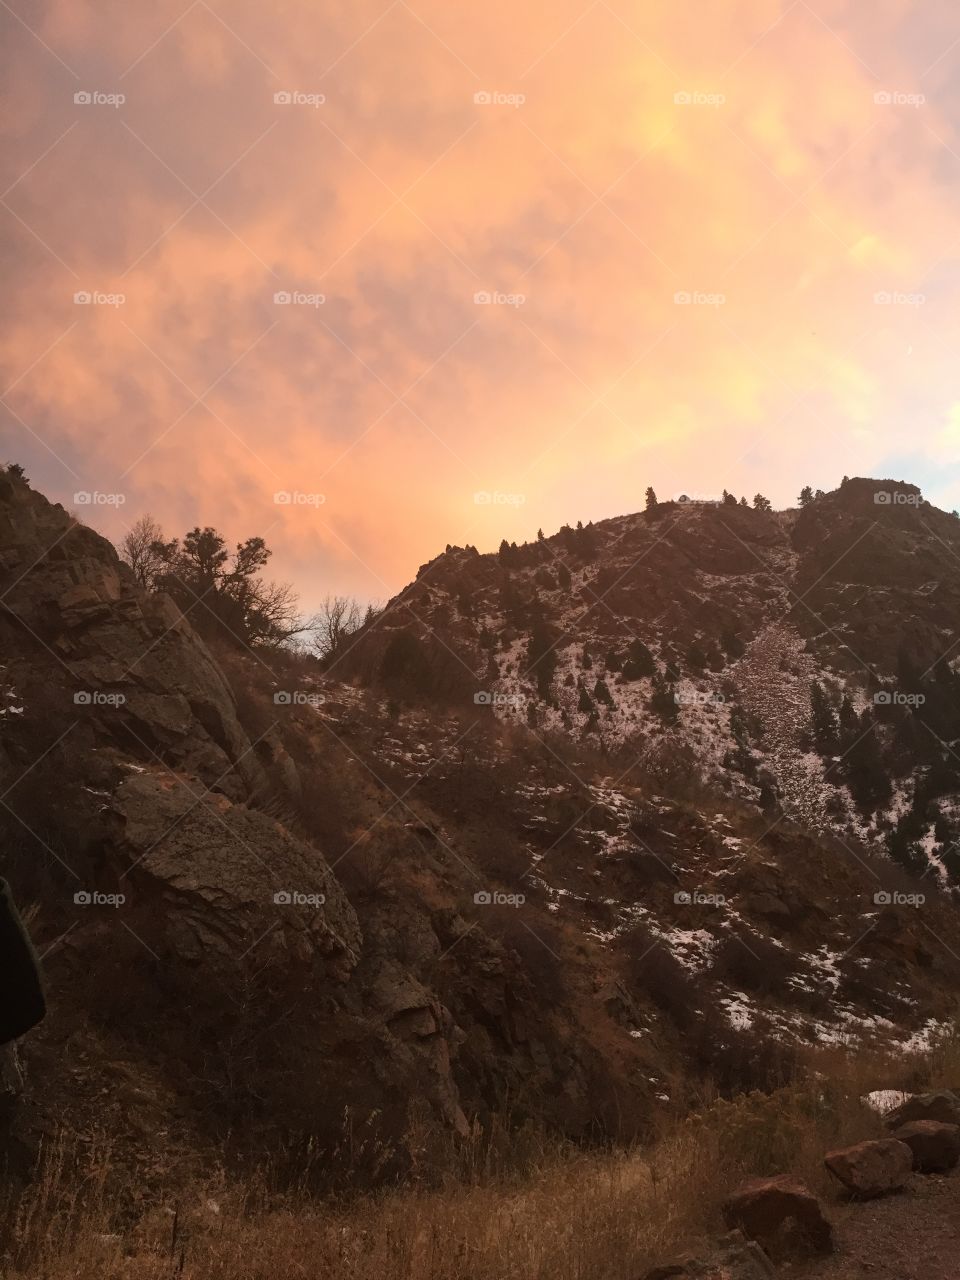 Red rocks, Colorado 